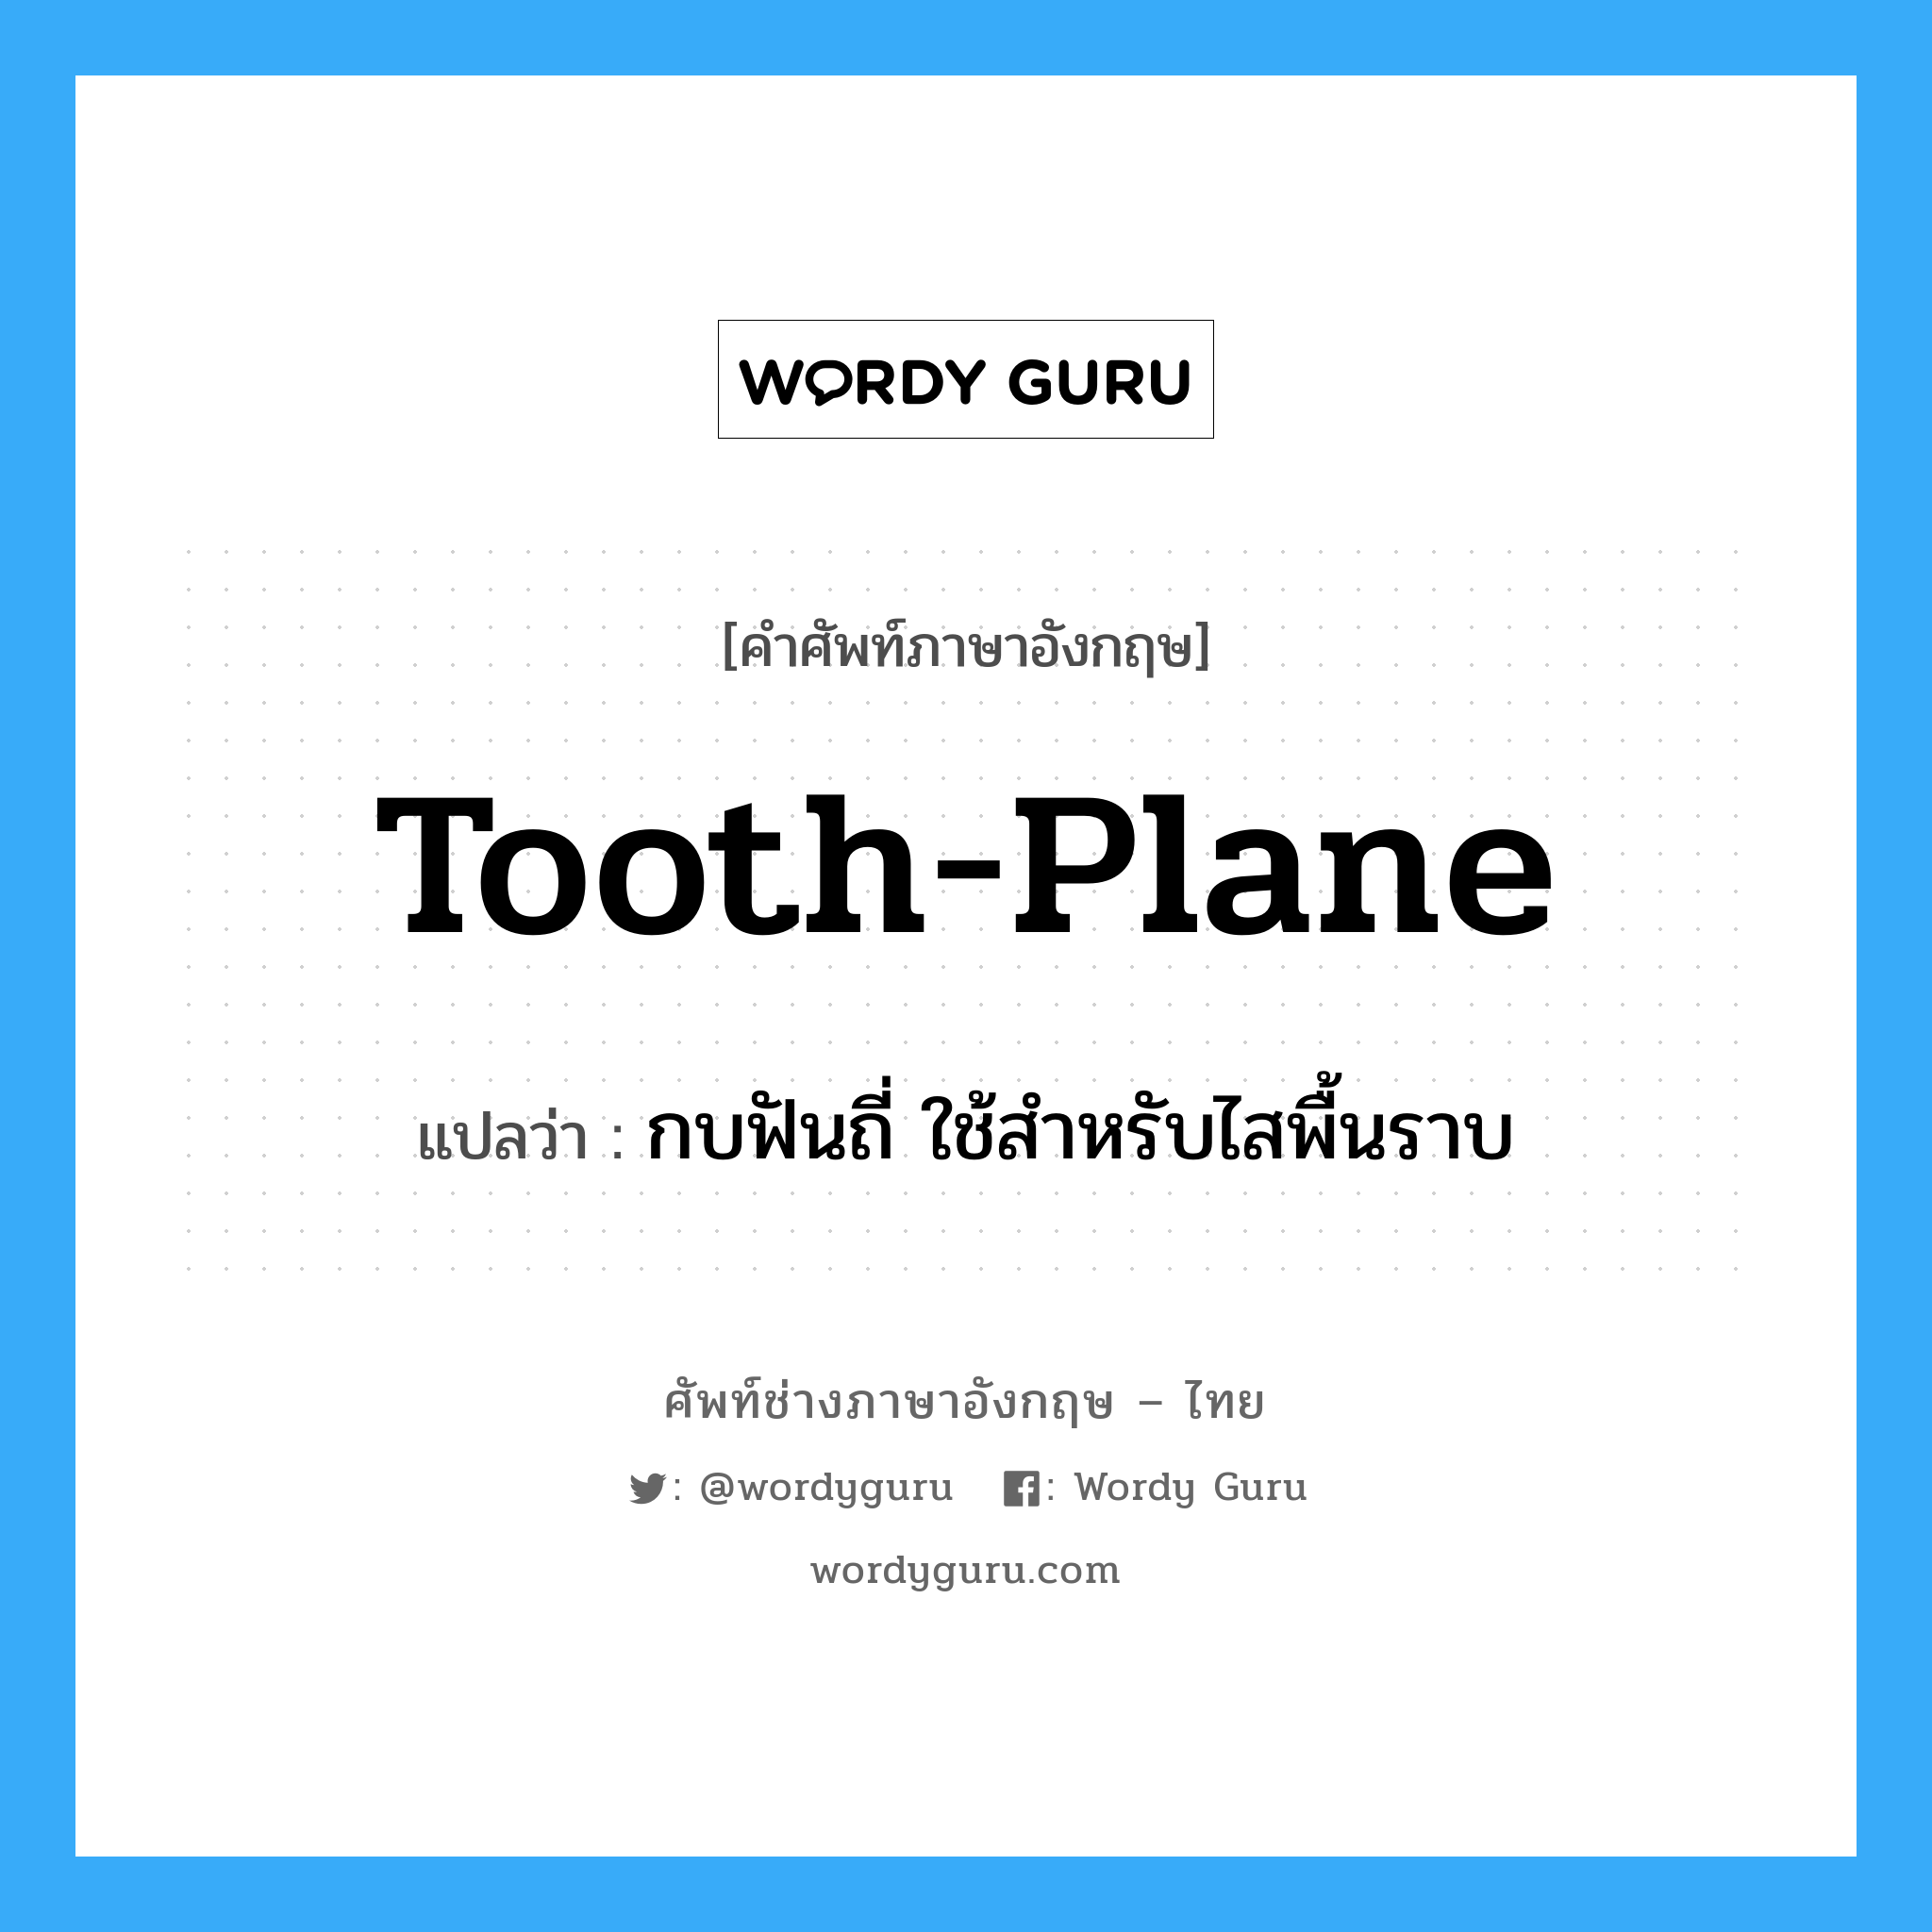 กบฟันถี่ ใช้สำหรับไสพื้นราบ ภาษาอังกฤษ?, คำศัพท์ช่างภาษาอังกฤษ - ไทย กบฟันถี่ ใช้สำหรับไสพื้นราบ คำศัพท์ภาษาอังกฤษ กบฟันถี่ ใช้สำหรับไสพื้นราบ แปลว่า tooth-plane